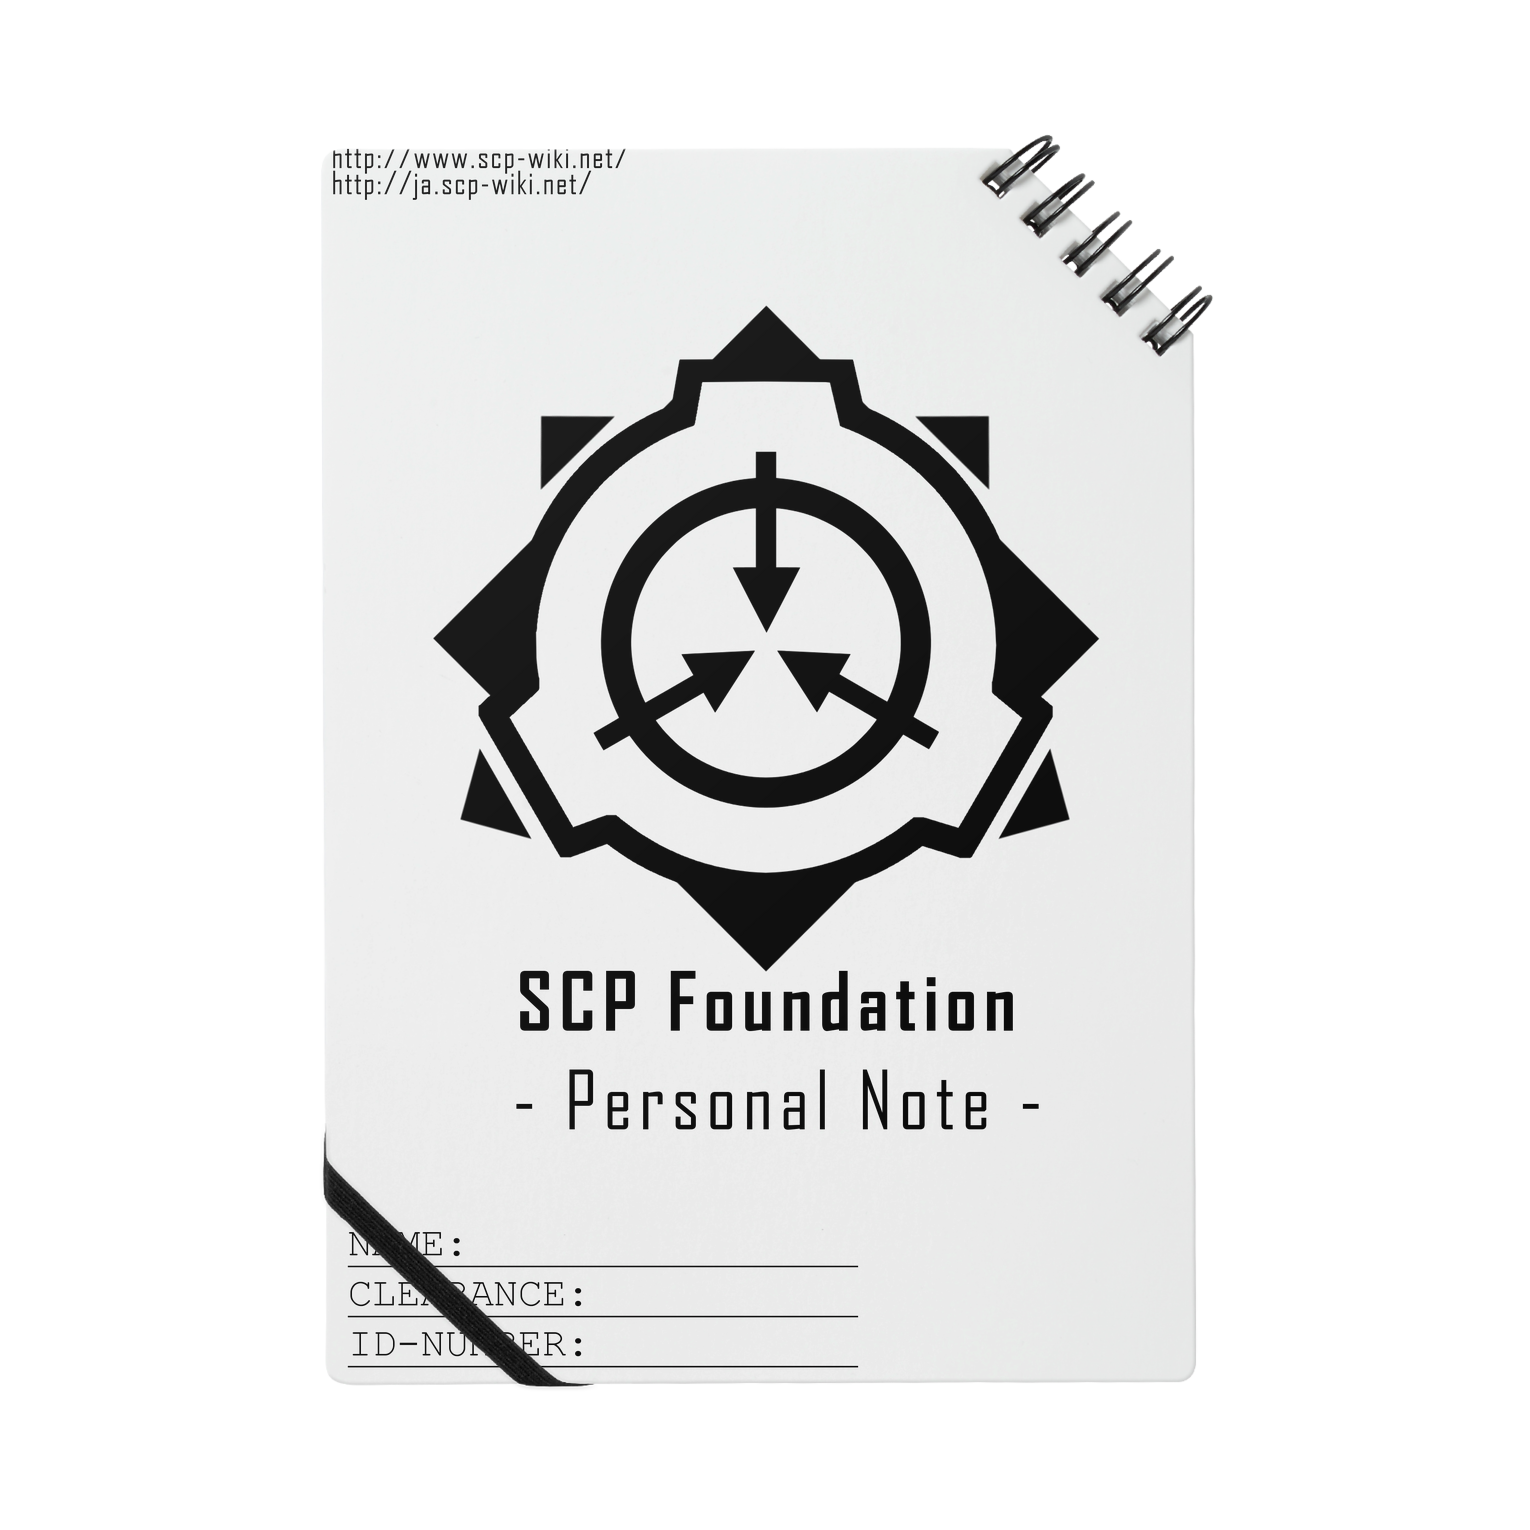 Scp цена. Схема фонда SCP. Вся карта SCP фонда. Книга SCP фонд. План SCP фонда.